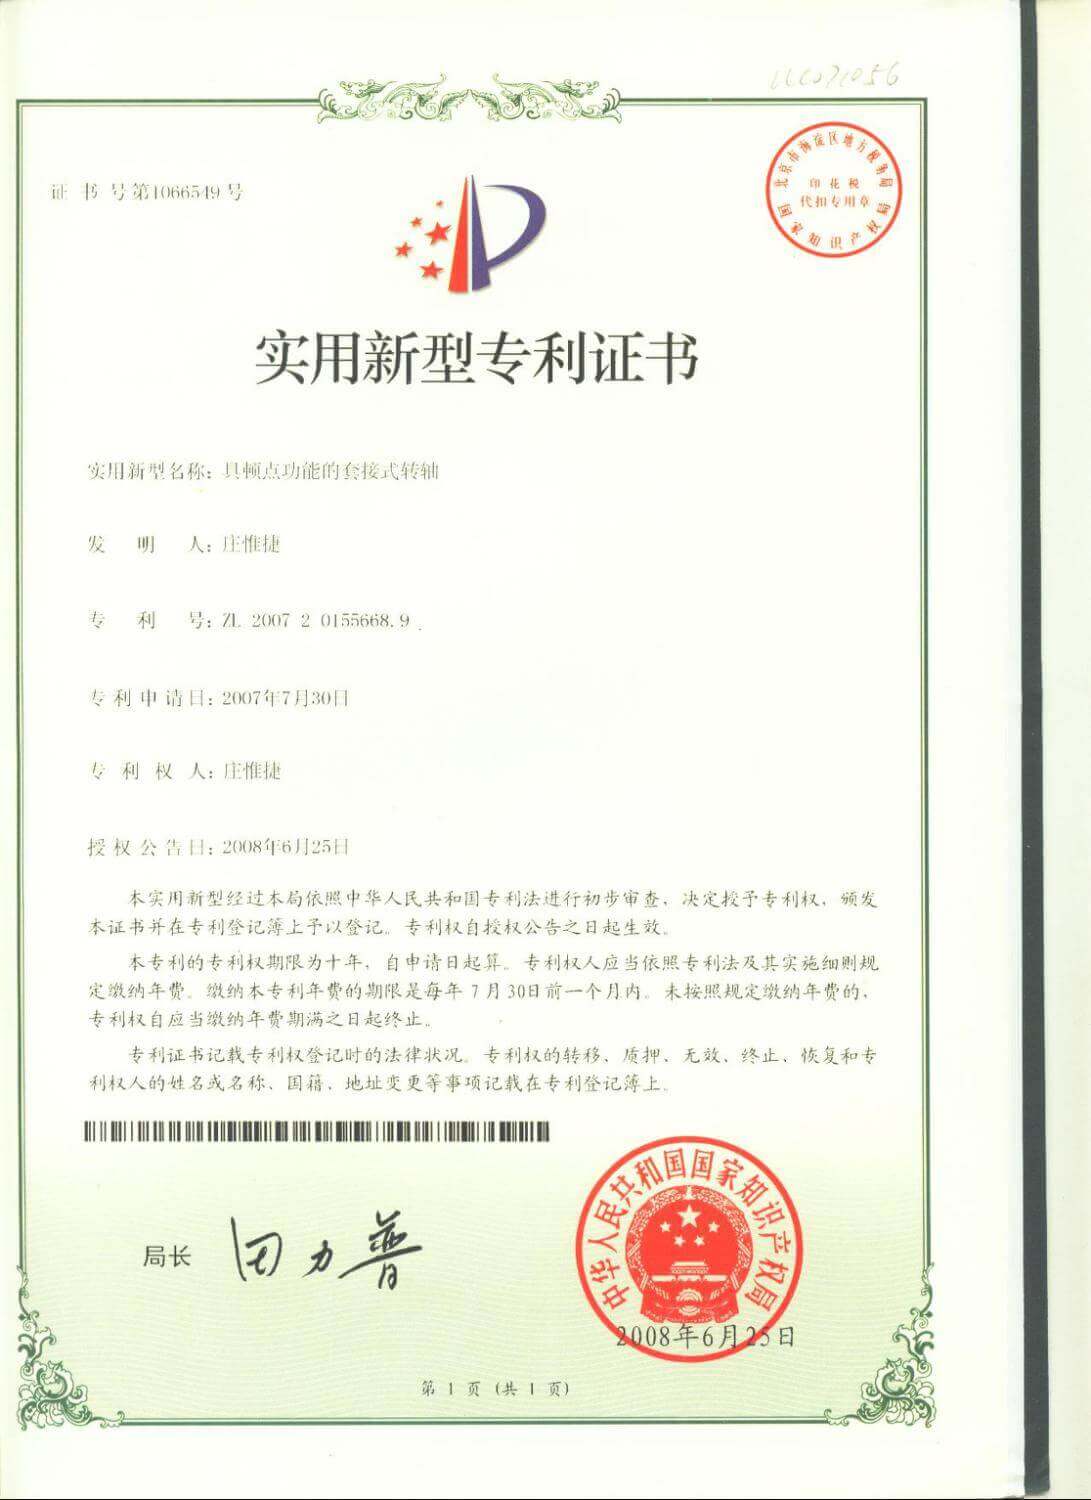 Chienfu-Tec CNC patents in Taiwan-25